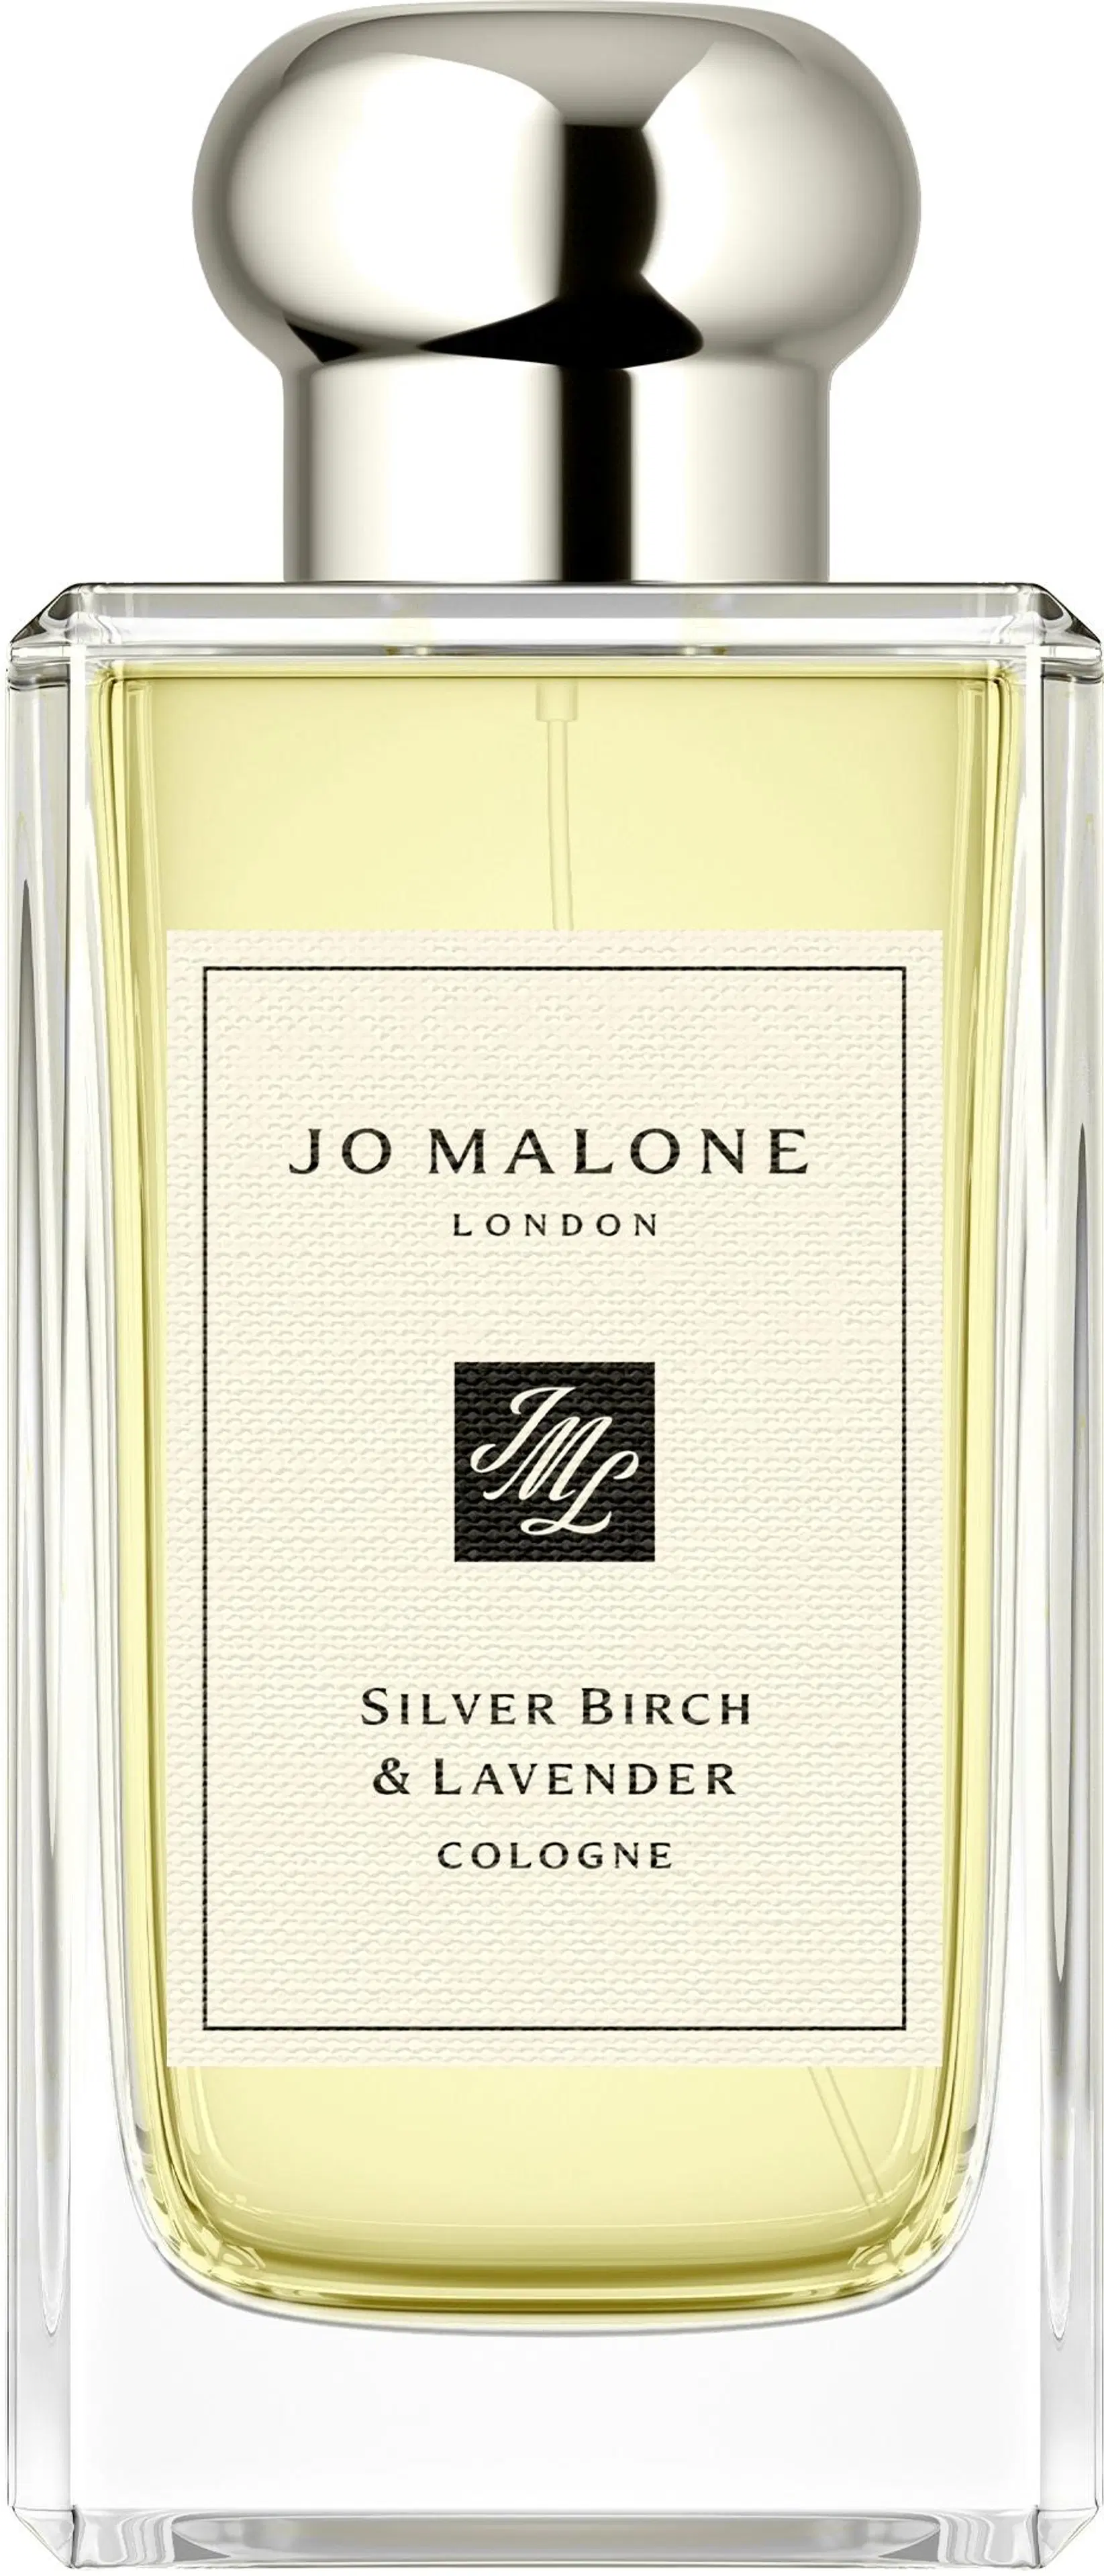 Jo Malone London Silver Birch & Lavender Cologne EdT tuoksu 100 ml